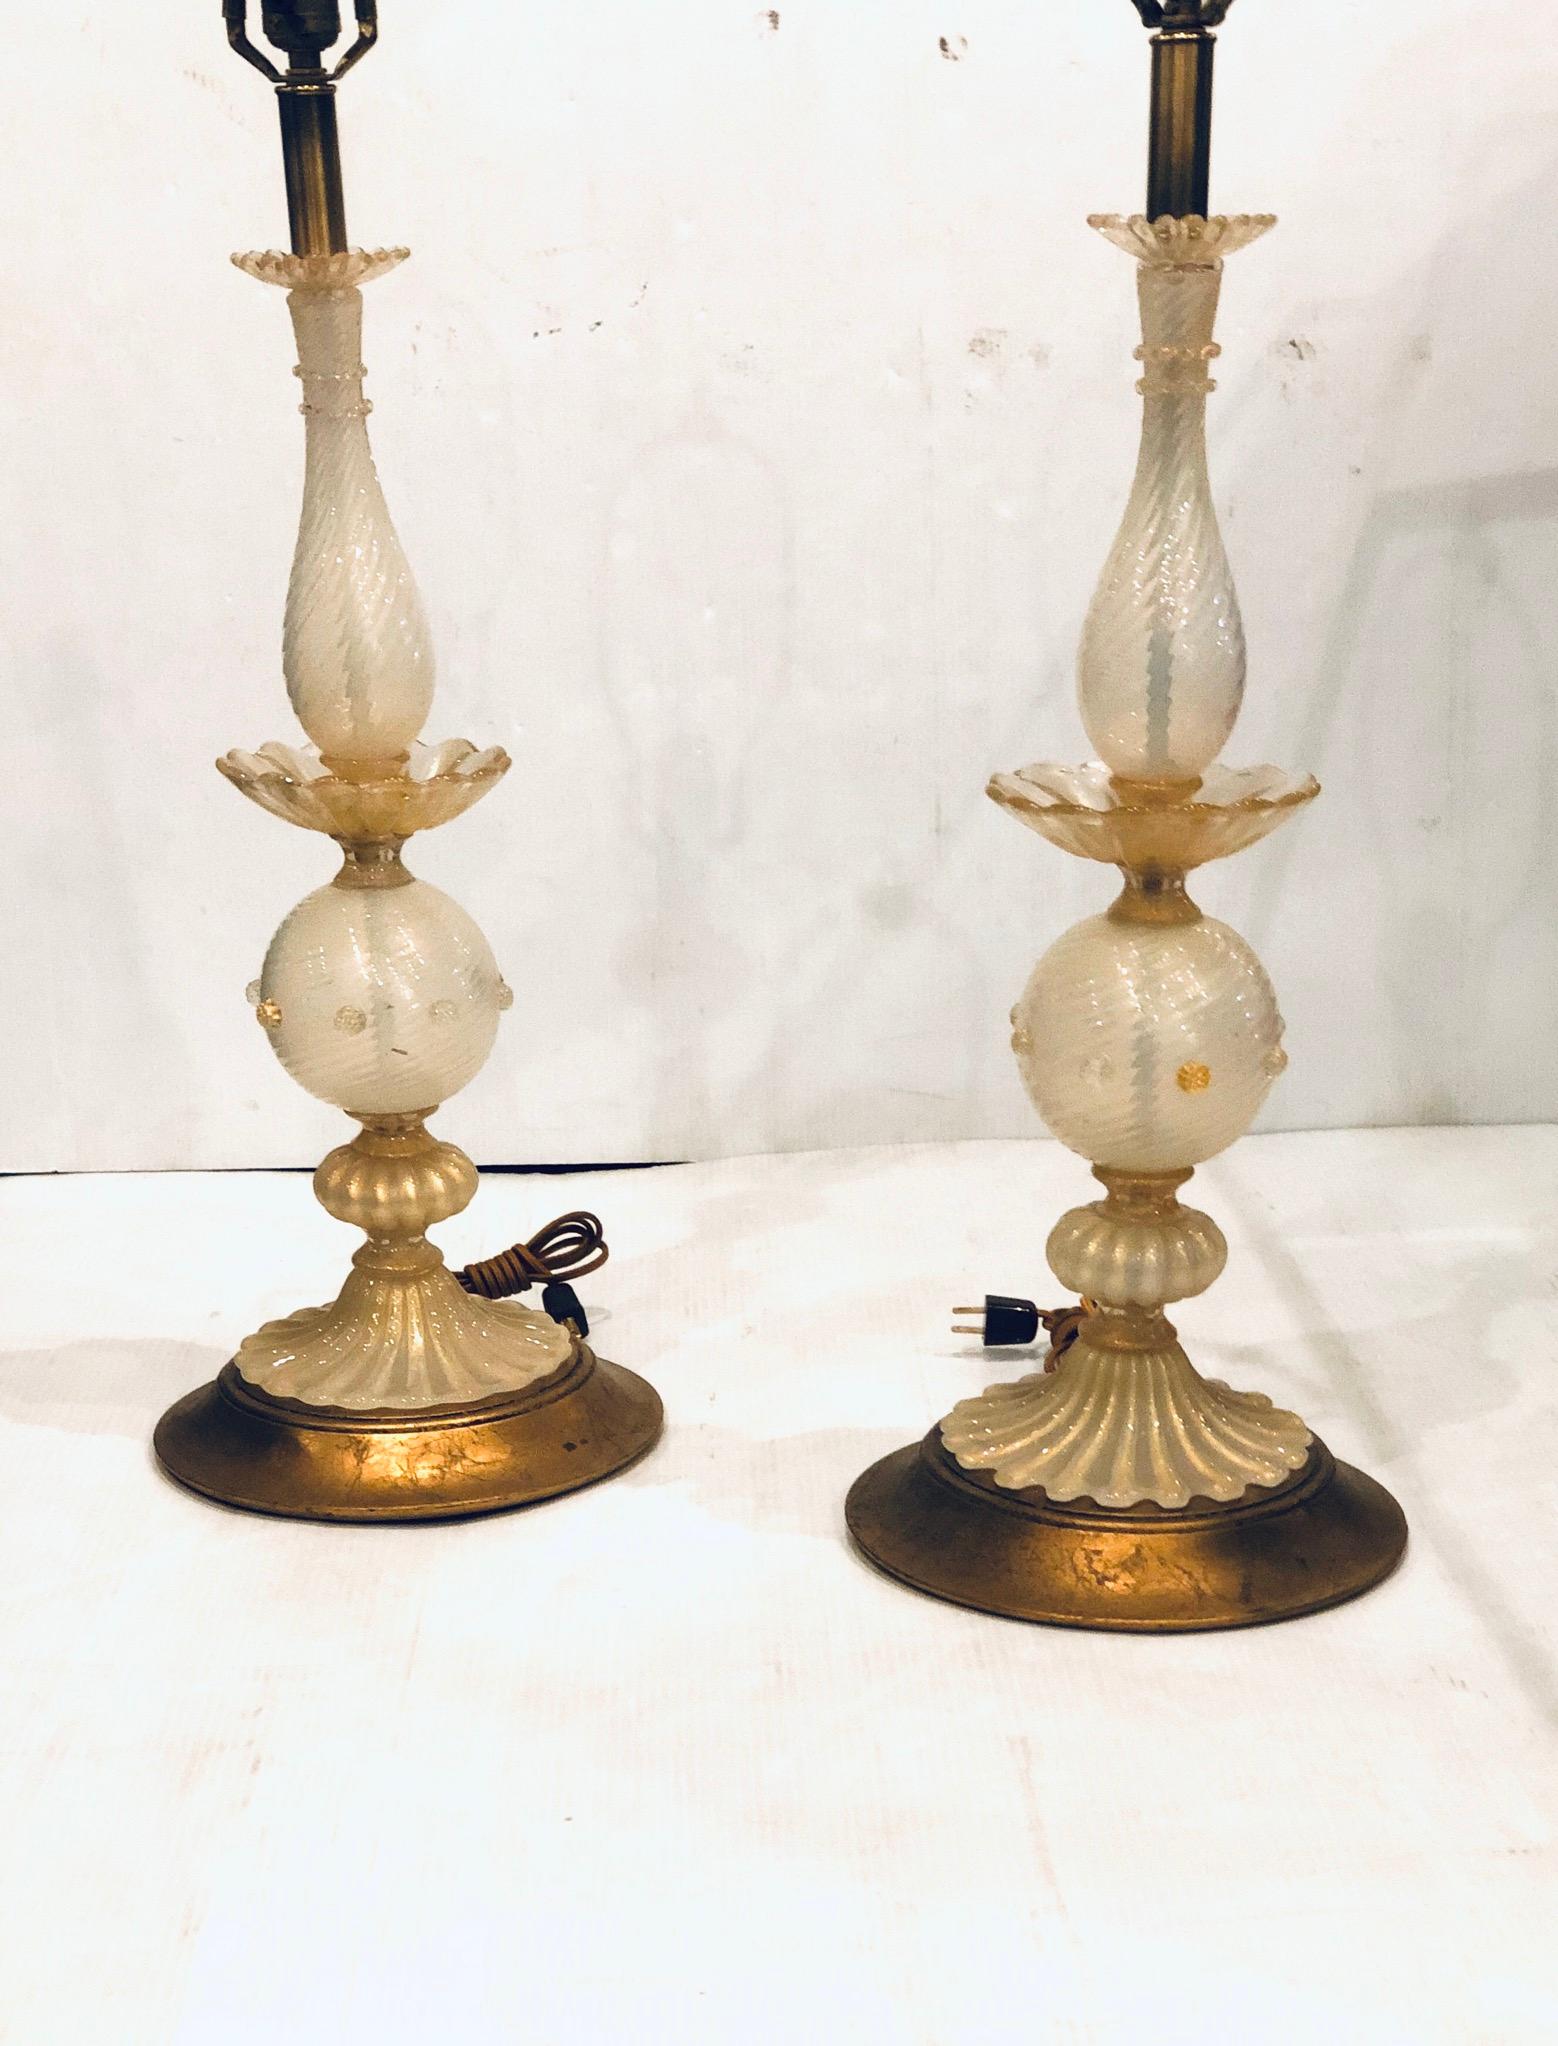 Une belle paire de lampes italiennes en verre de Murano, circa 1950s avec des bases originales en bois et feuilles d'or, en très bon état fraîchement recâblées avec un cordon en tissu, en très bon état. Les lampes sont vendues sans abat-jour, et